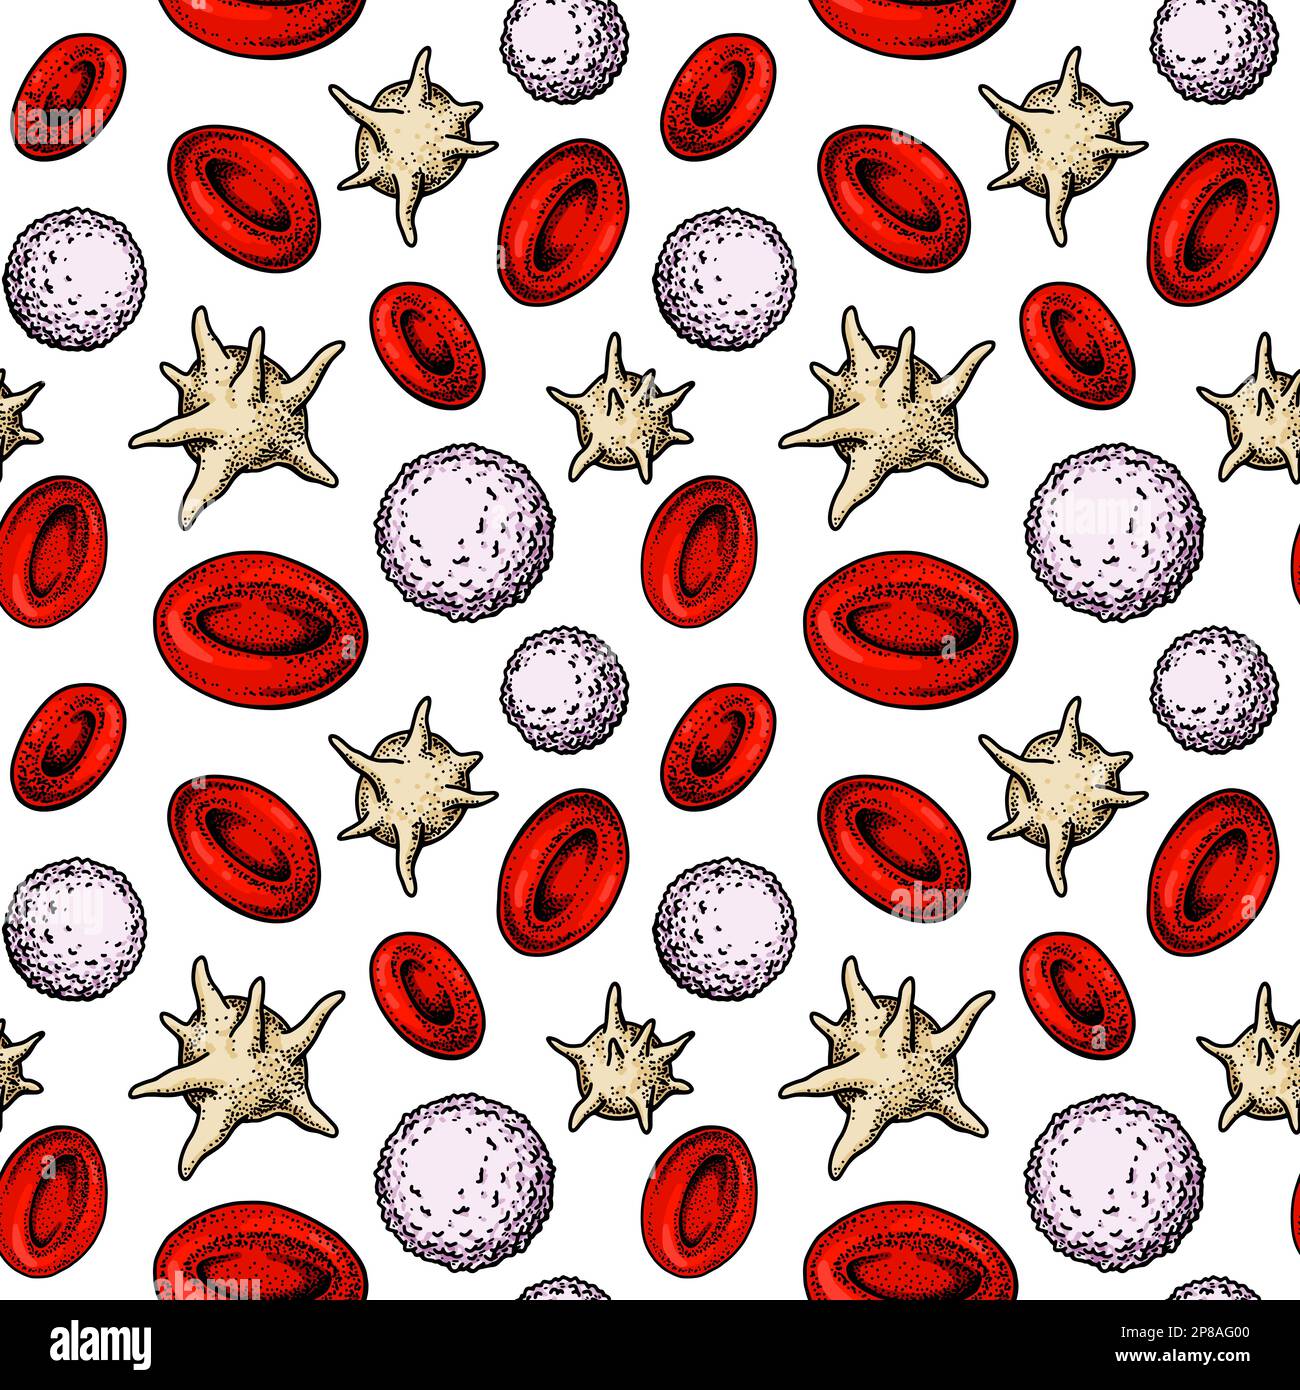 Structure homogène des cellules sanguines. Érythrocytes, leucocytes et plaquettes dessinés à la main. Illustration de la biologie scientifique dans un style d'esquisse Illustration de Vecteur